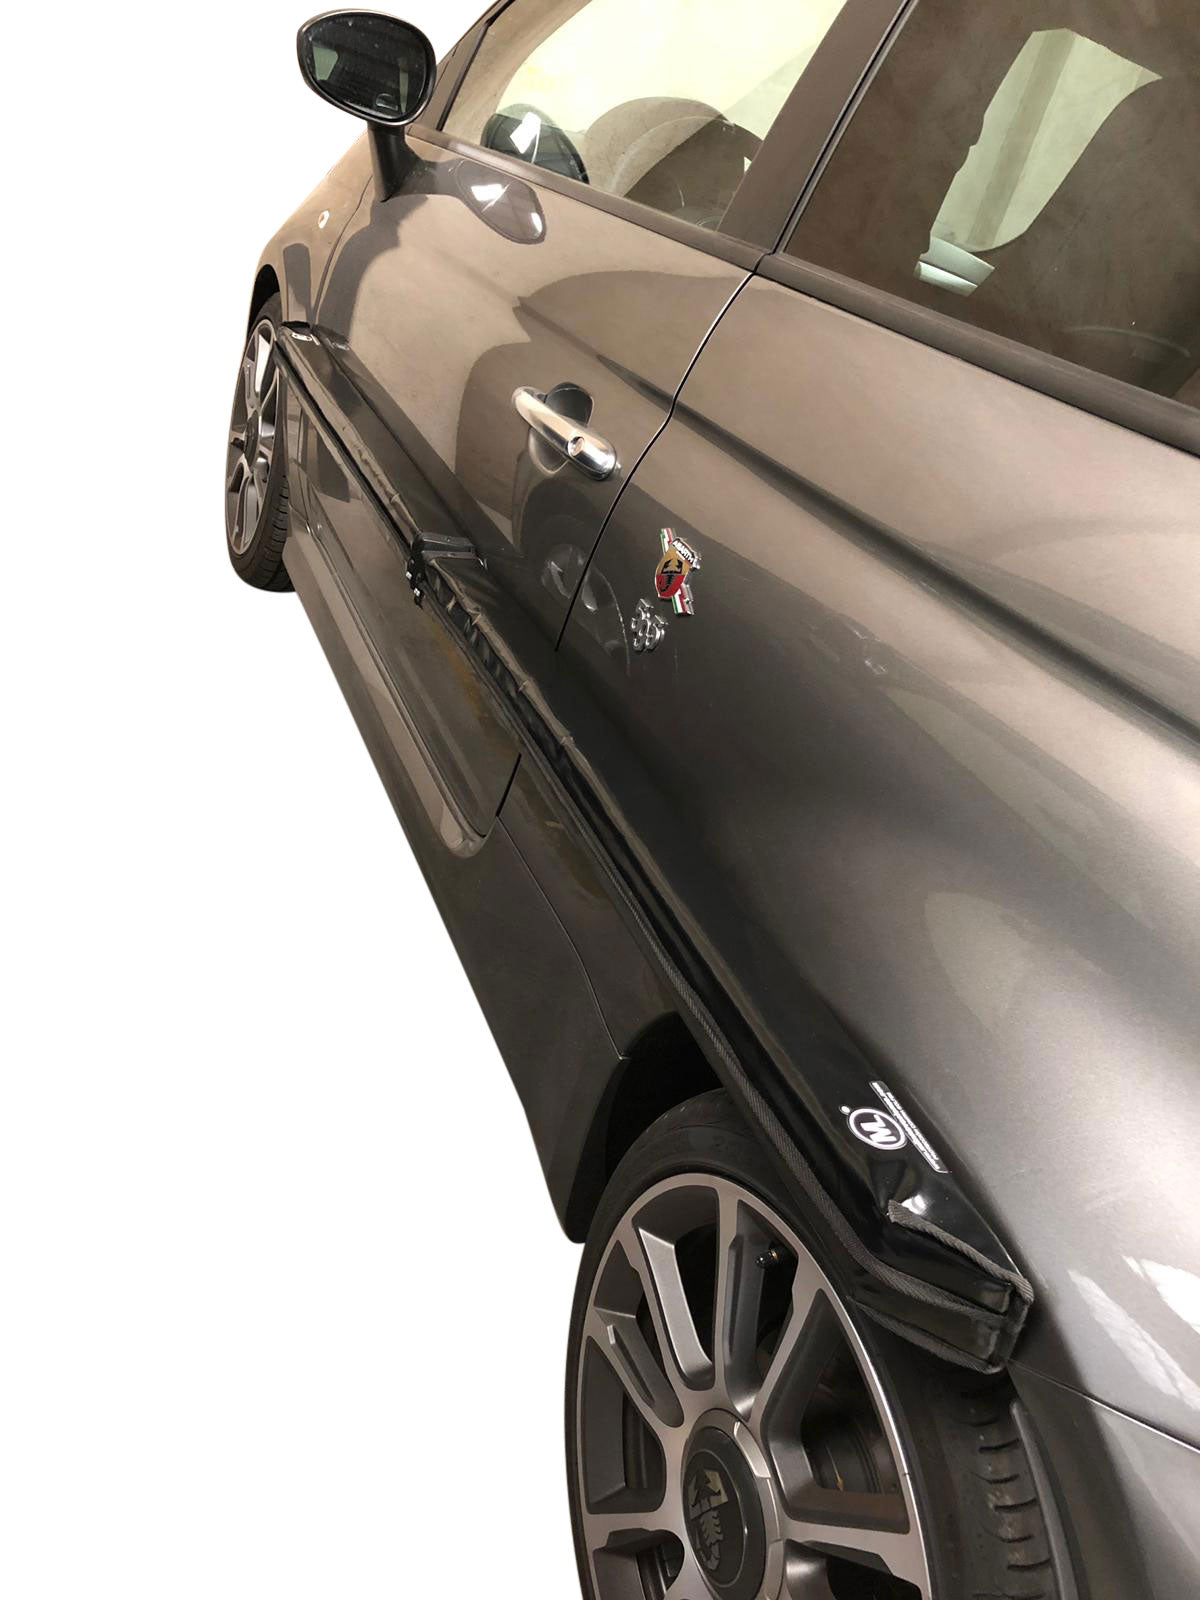 Kaufen Sie Trendy And Decorative magnetischer autotür schutz